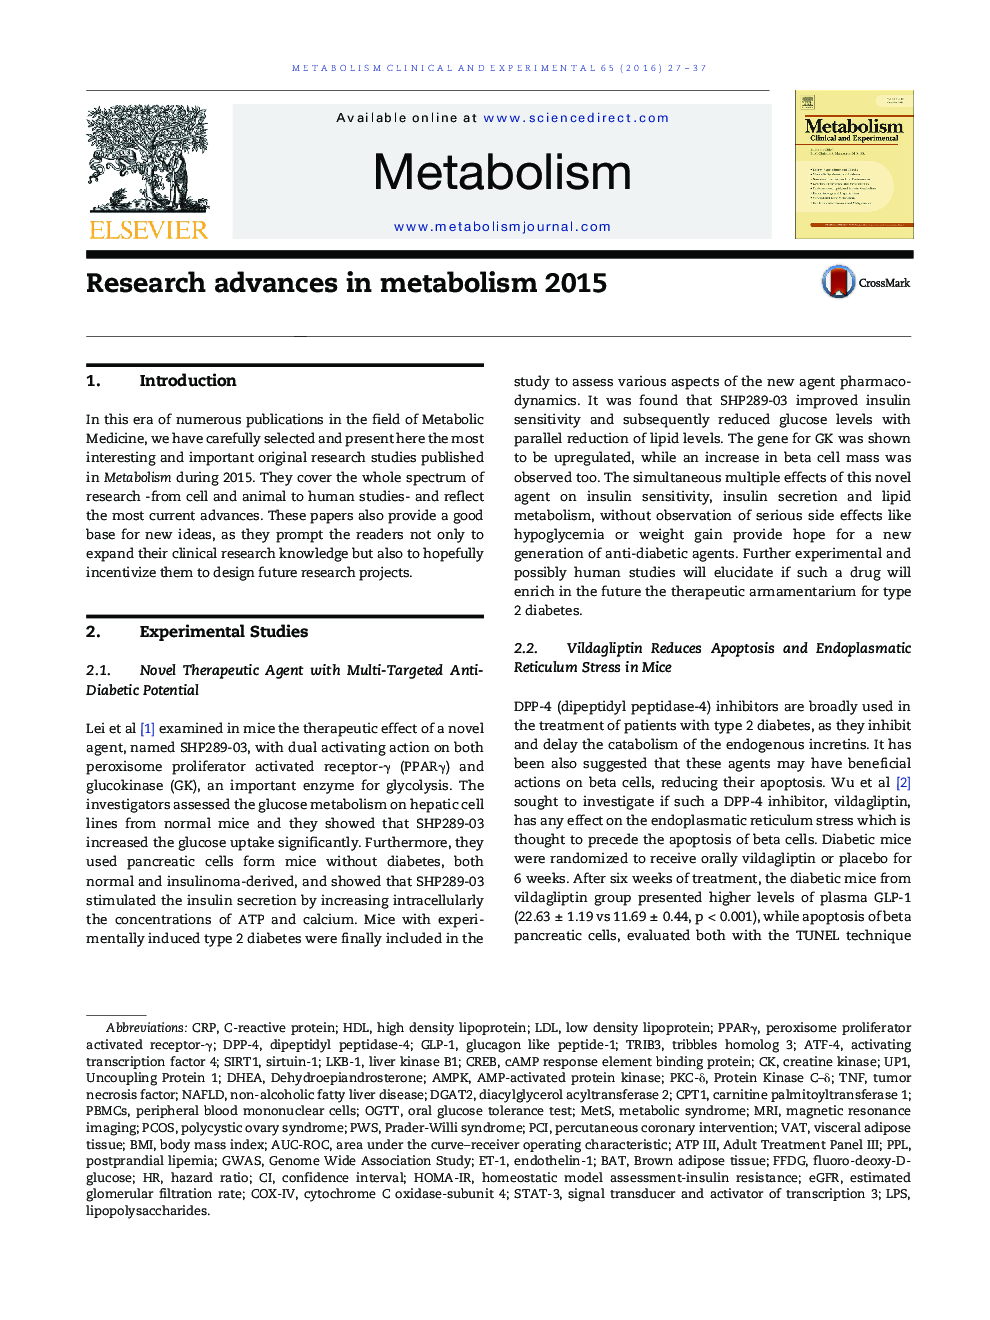 پیشرفت های تحقیقاتی در متابولیسم 2015 